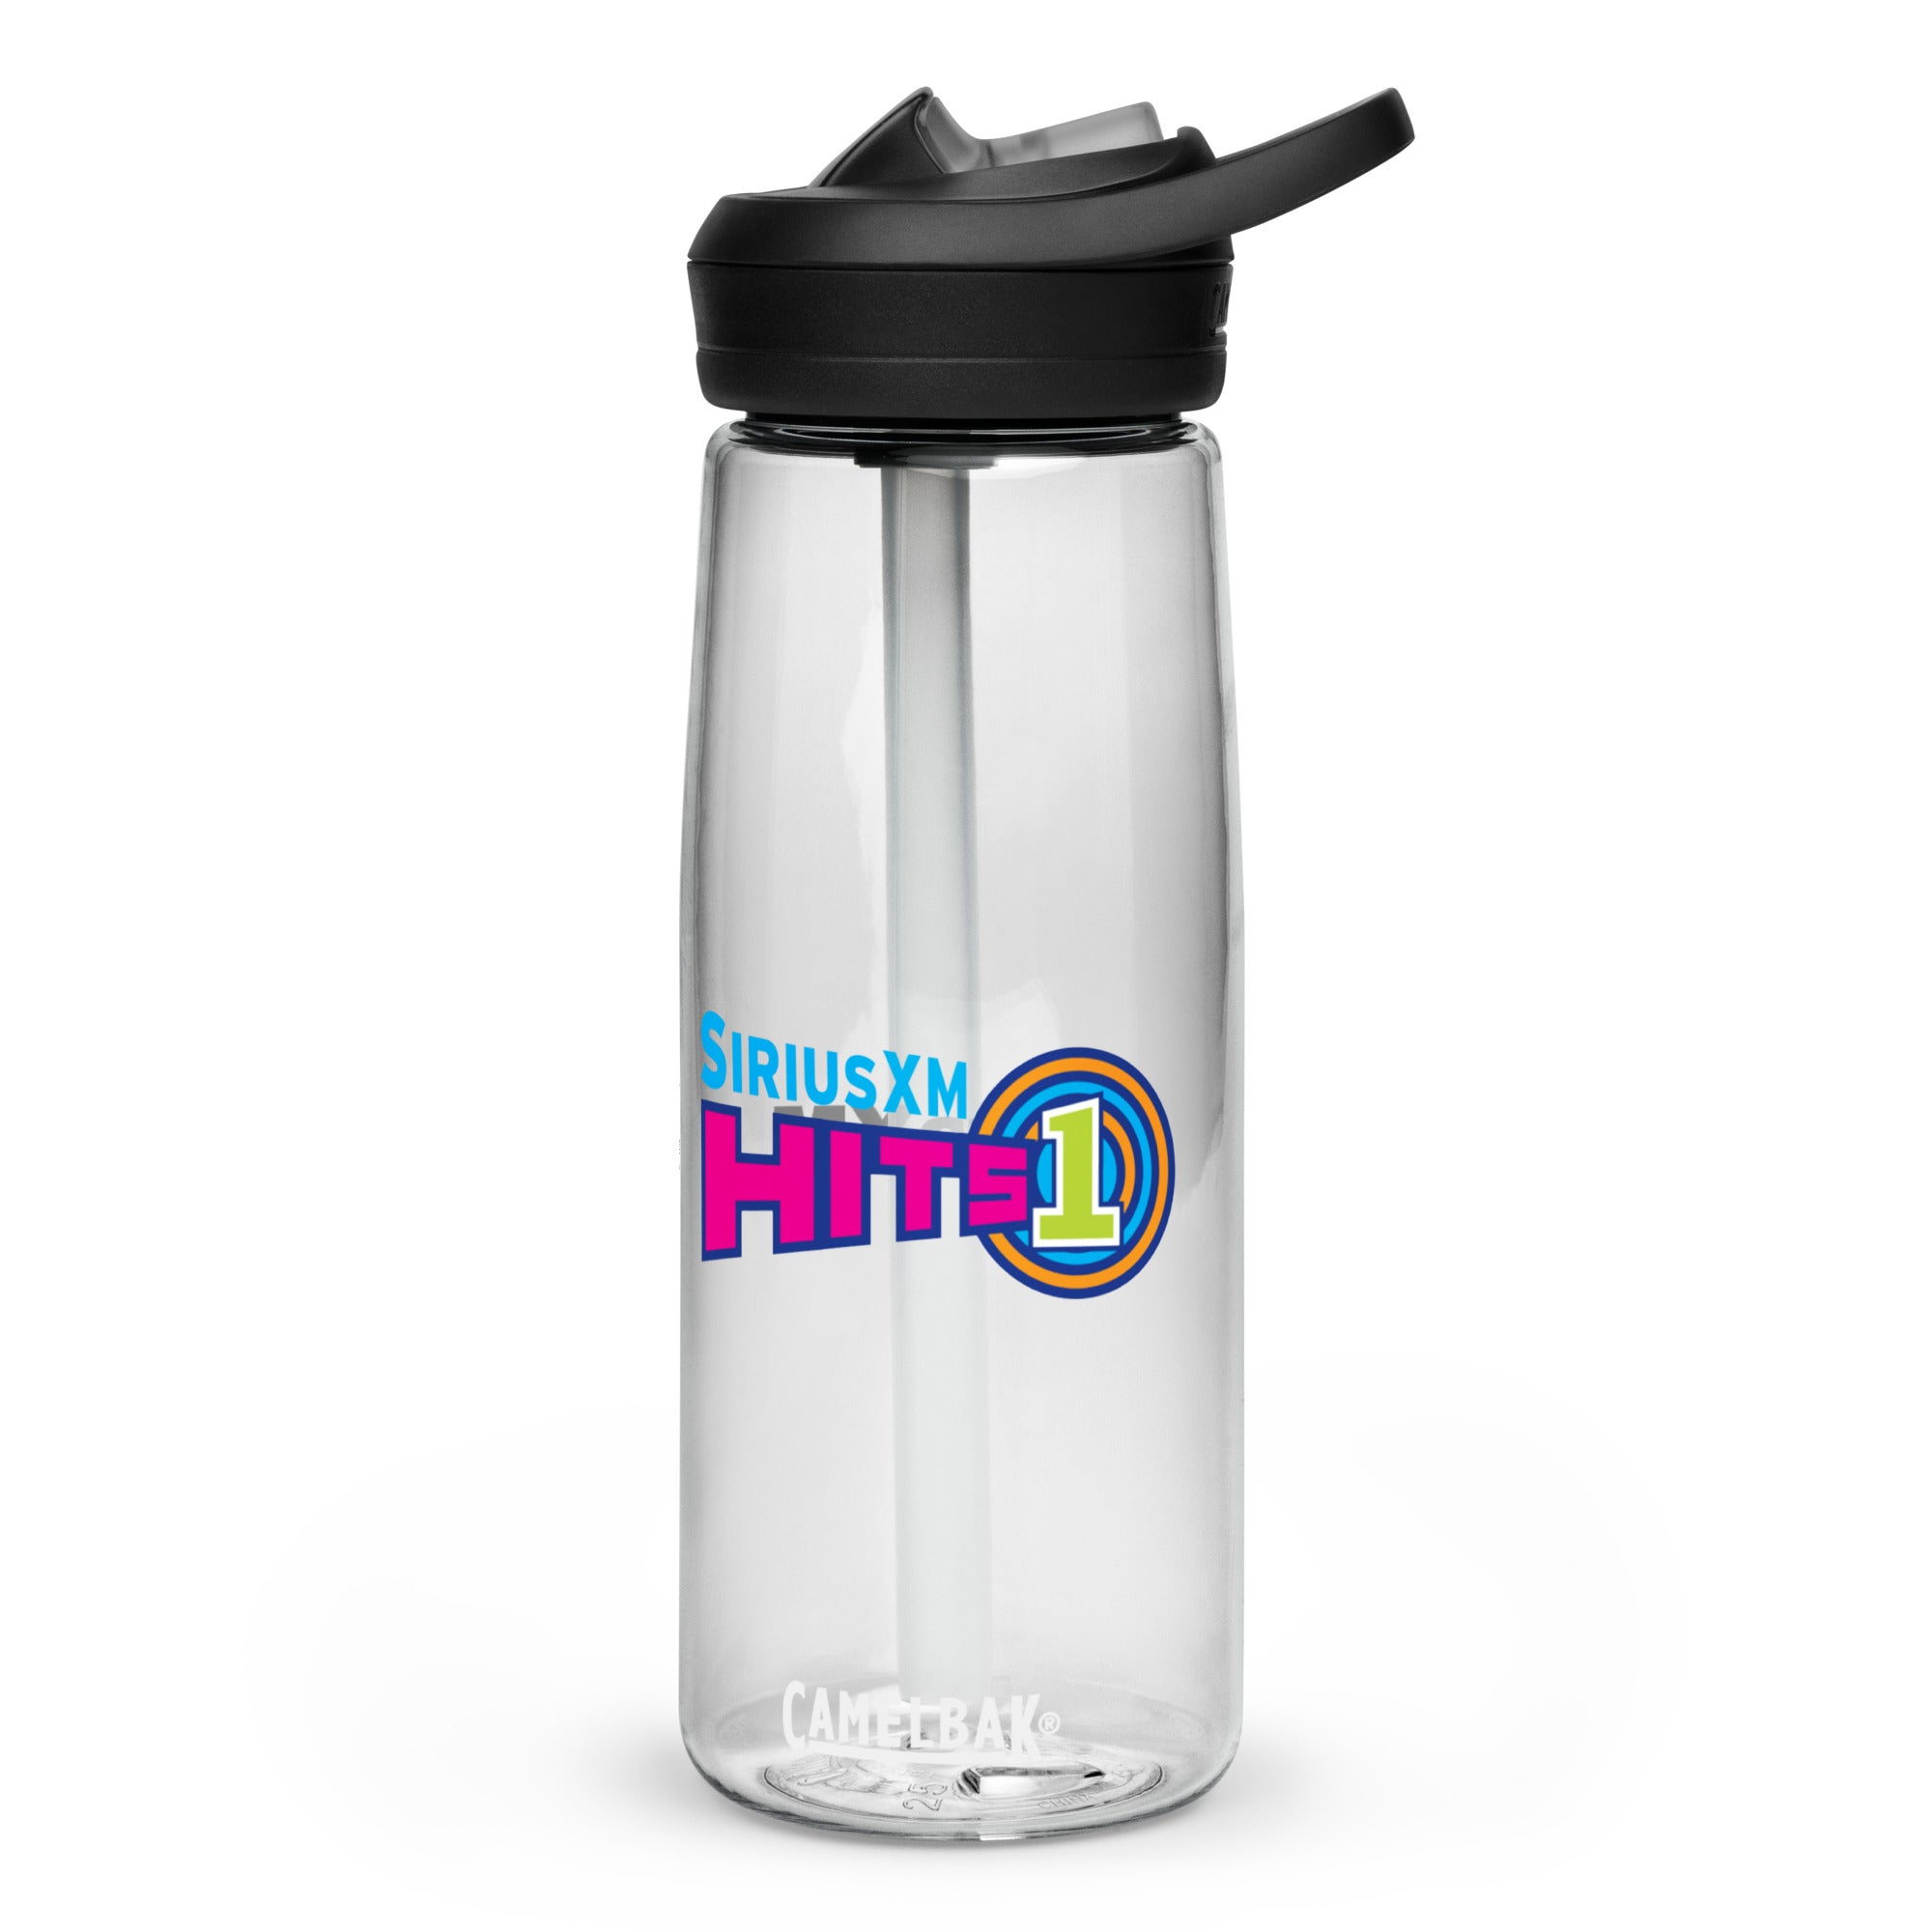 Hits 1: CamelBak Eddy®+ Sports Bottle